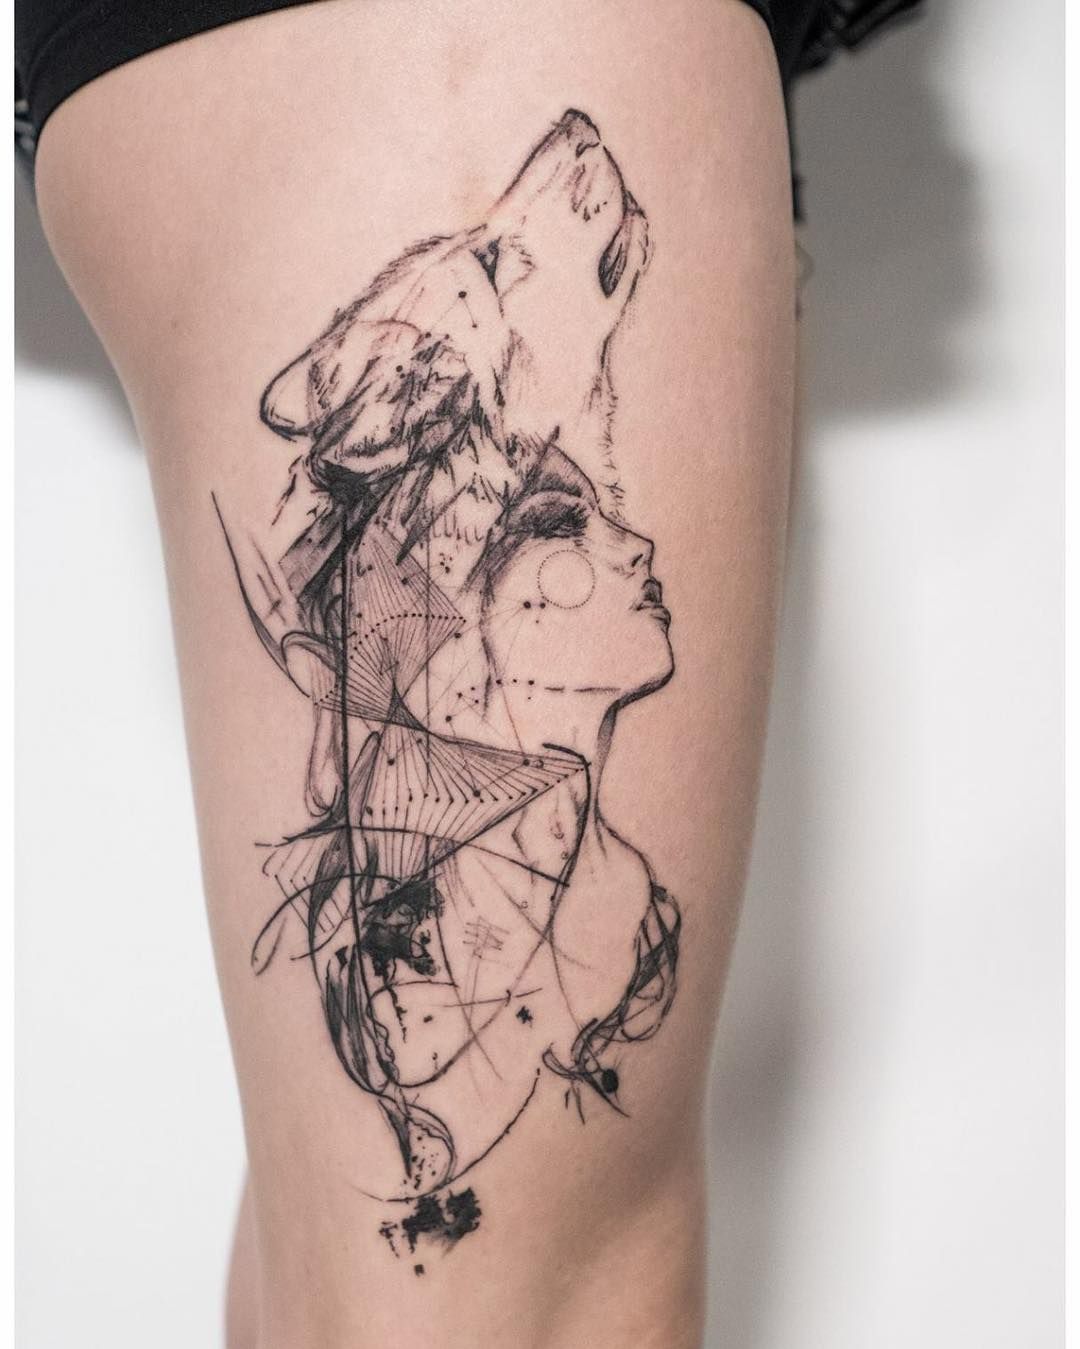 Tatuagem feminina de lobo geométrica 2021